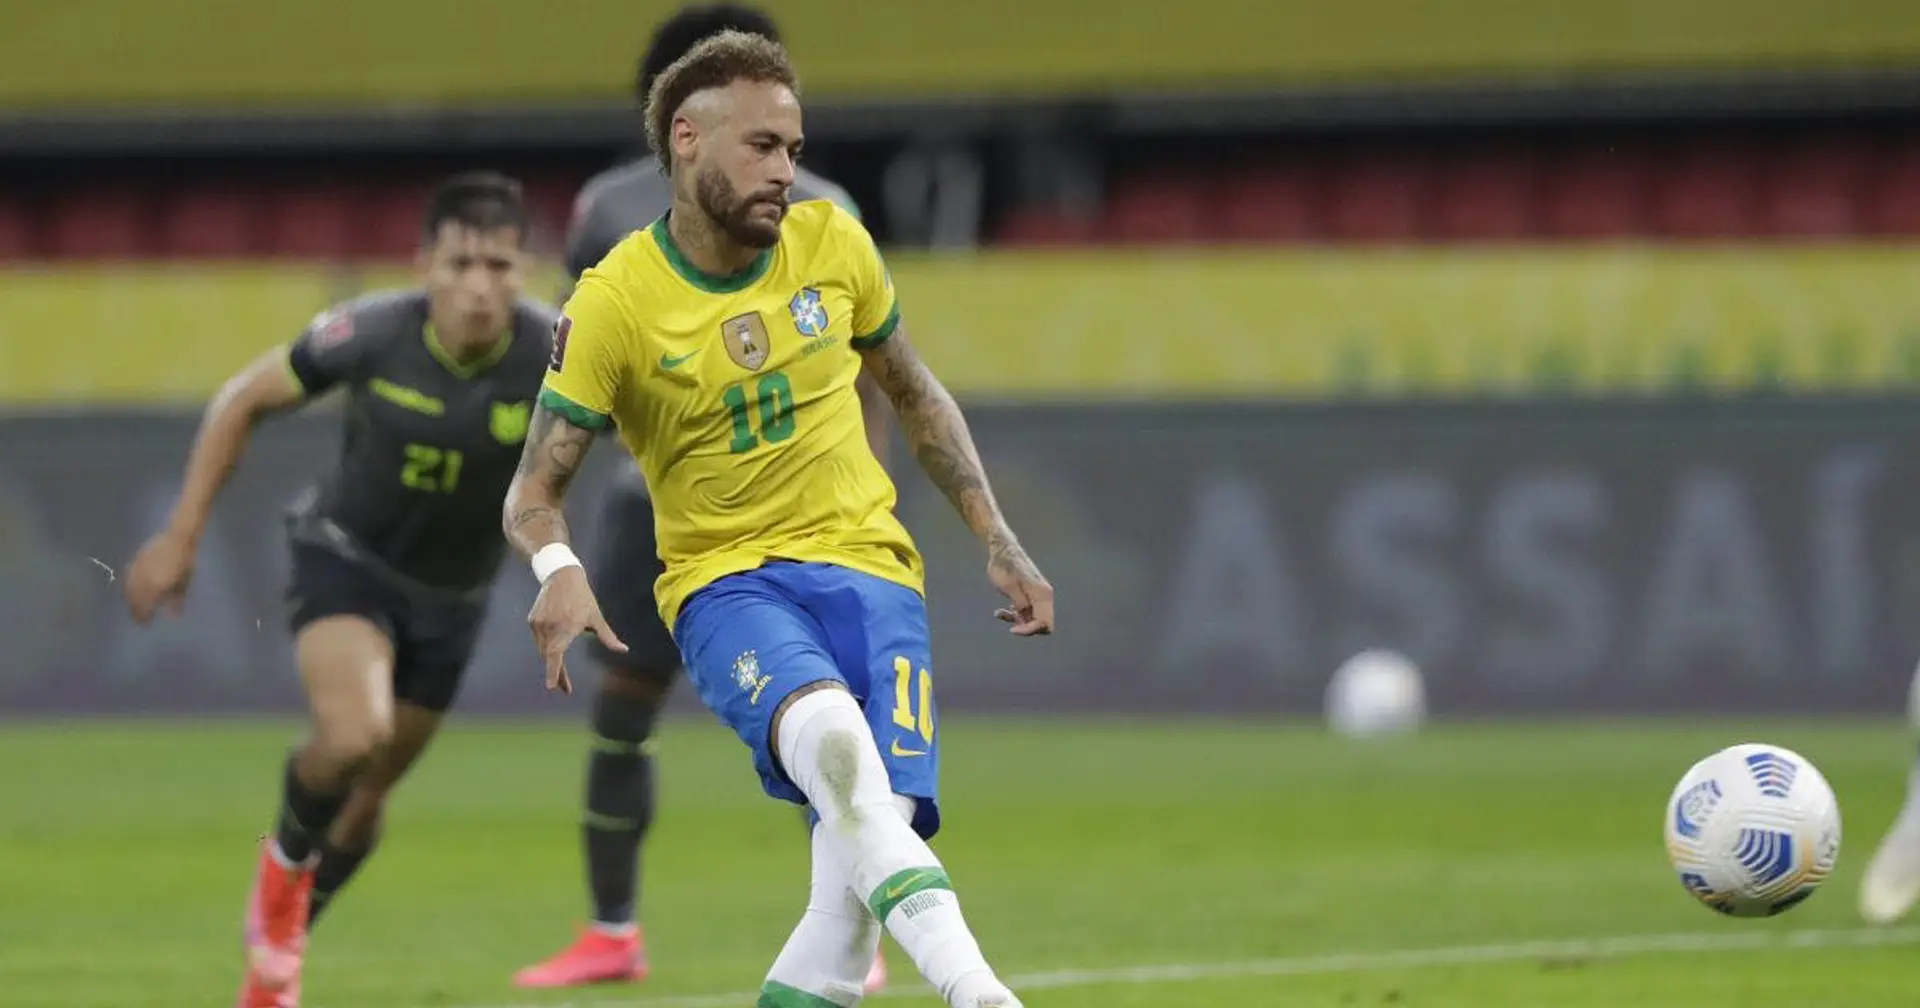 1ère tentative ratée, 2ème essai validé! Neymar buteur chanceux avec le Brésil cette nuit sur penalty